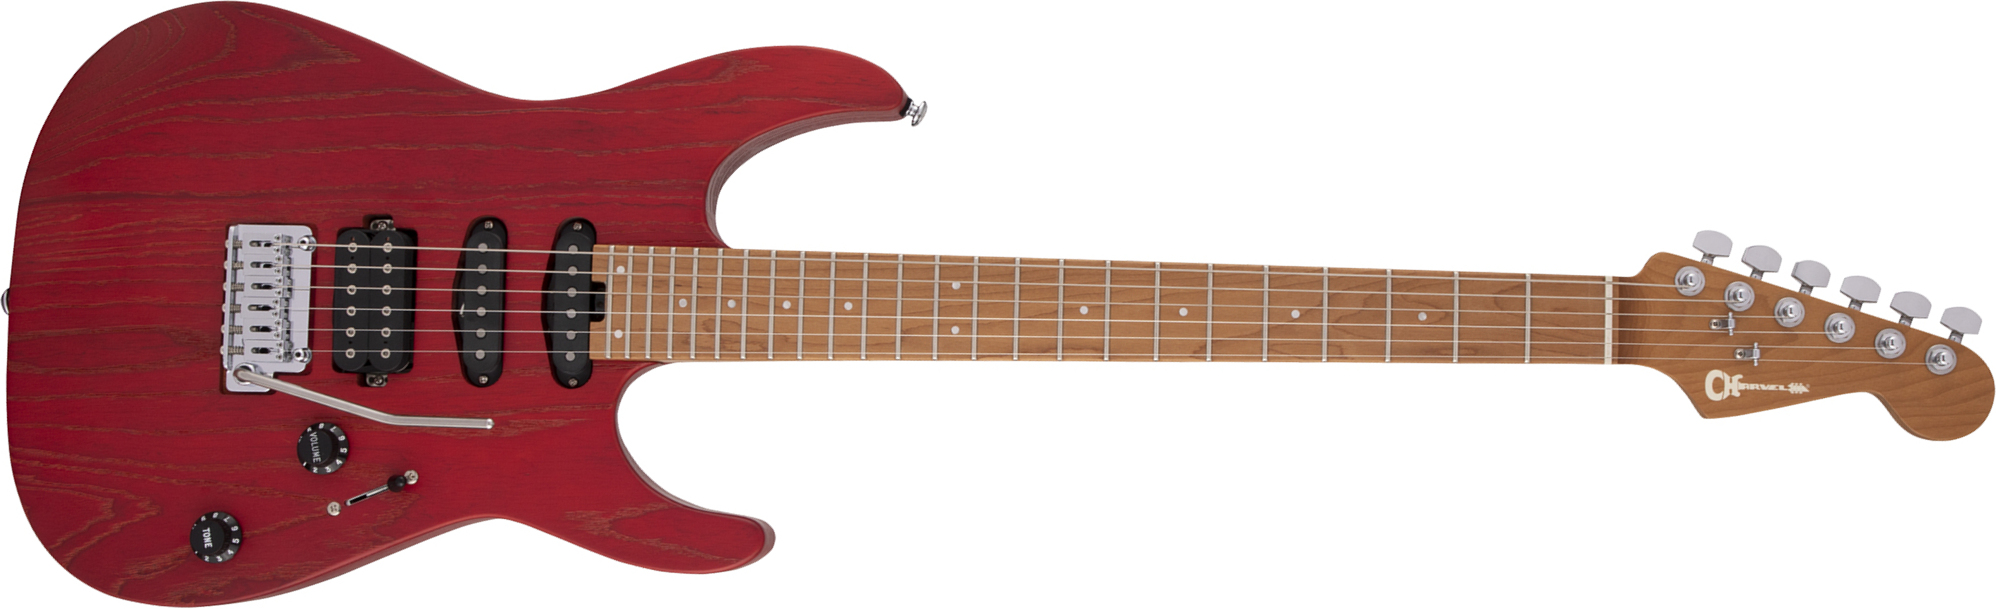 Charvel Dinky Dk24 Hss 2pt Cm Ash Pro-mod Seymour Duncan Trem Mn - Red Ash - Guitarra eléctrica con forma de str. - Main picture